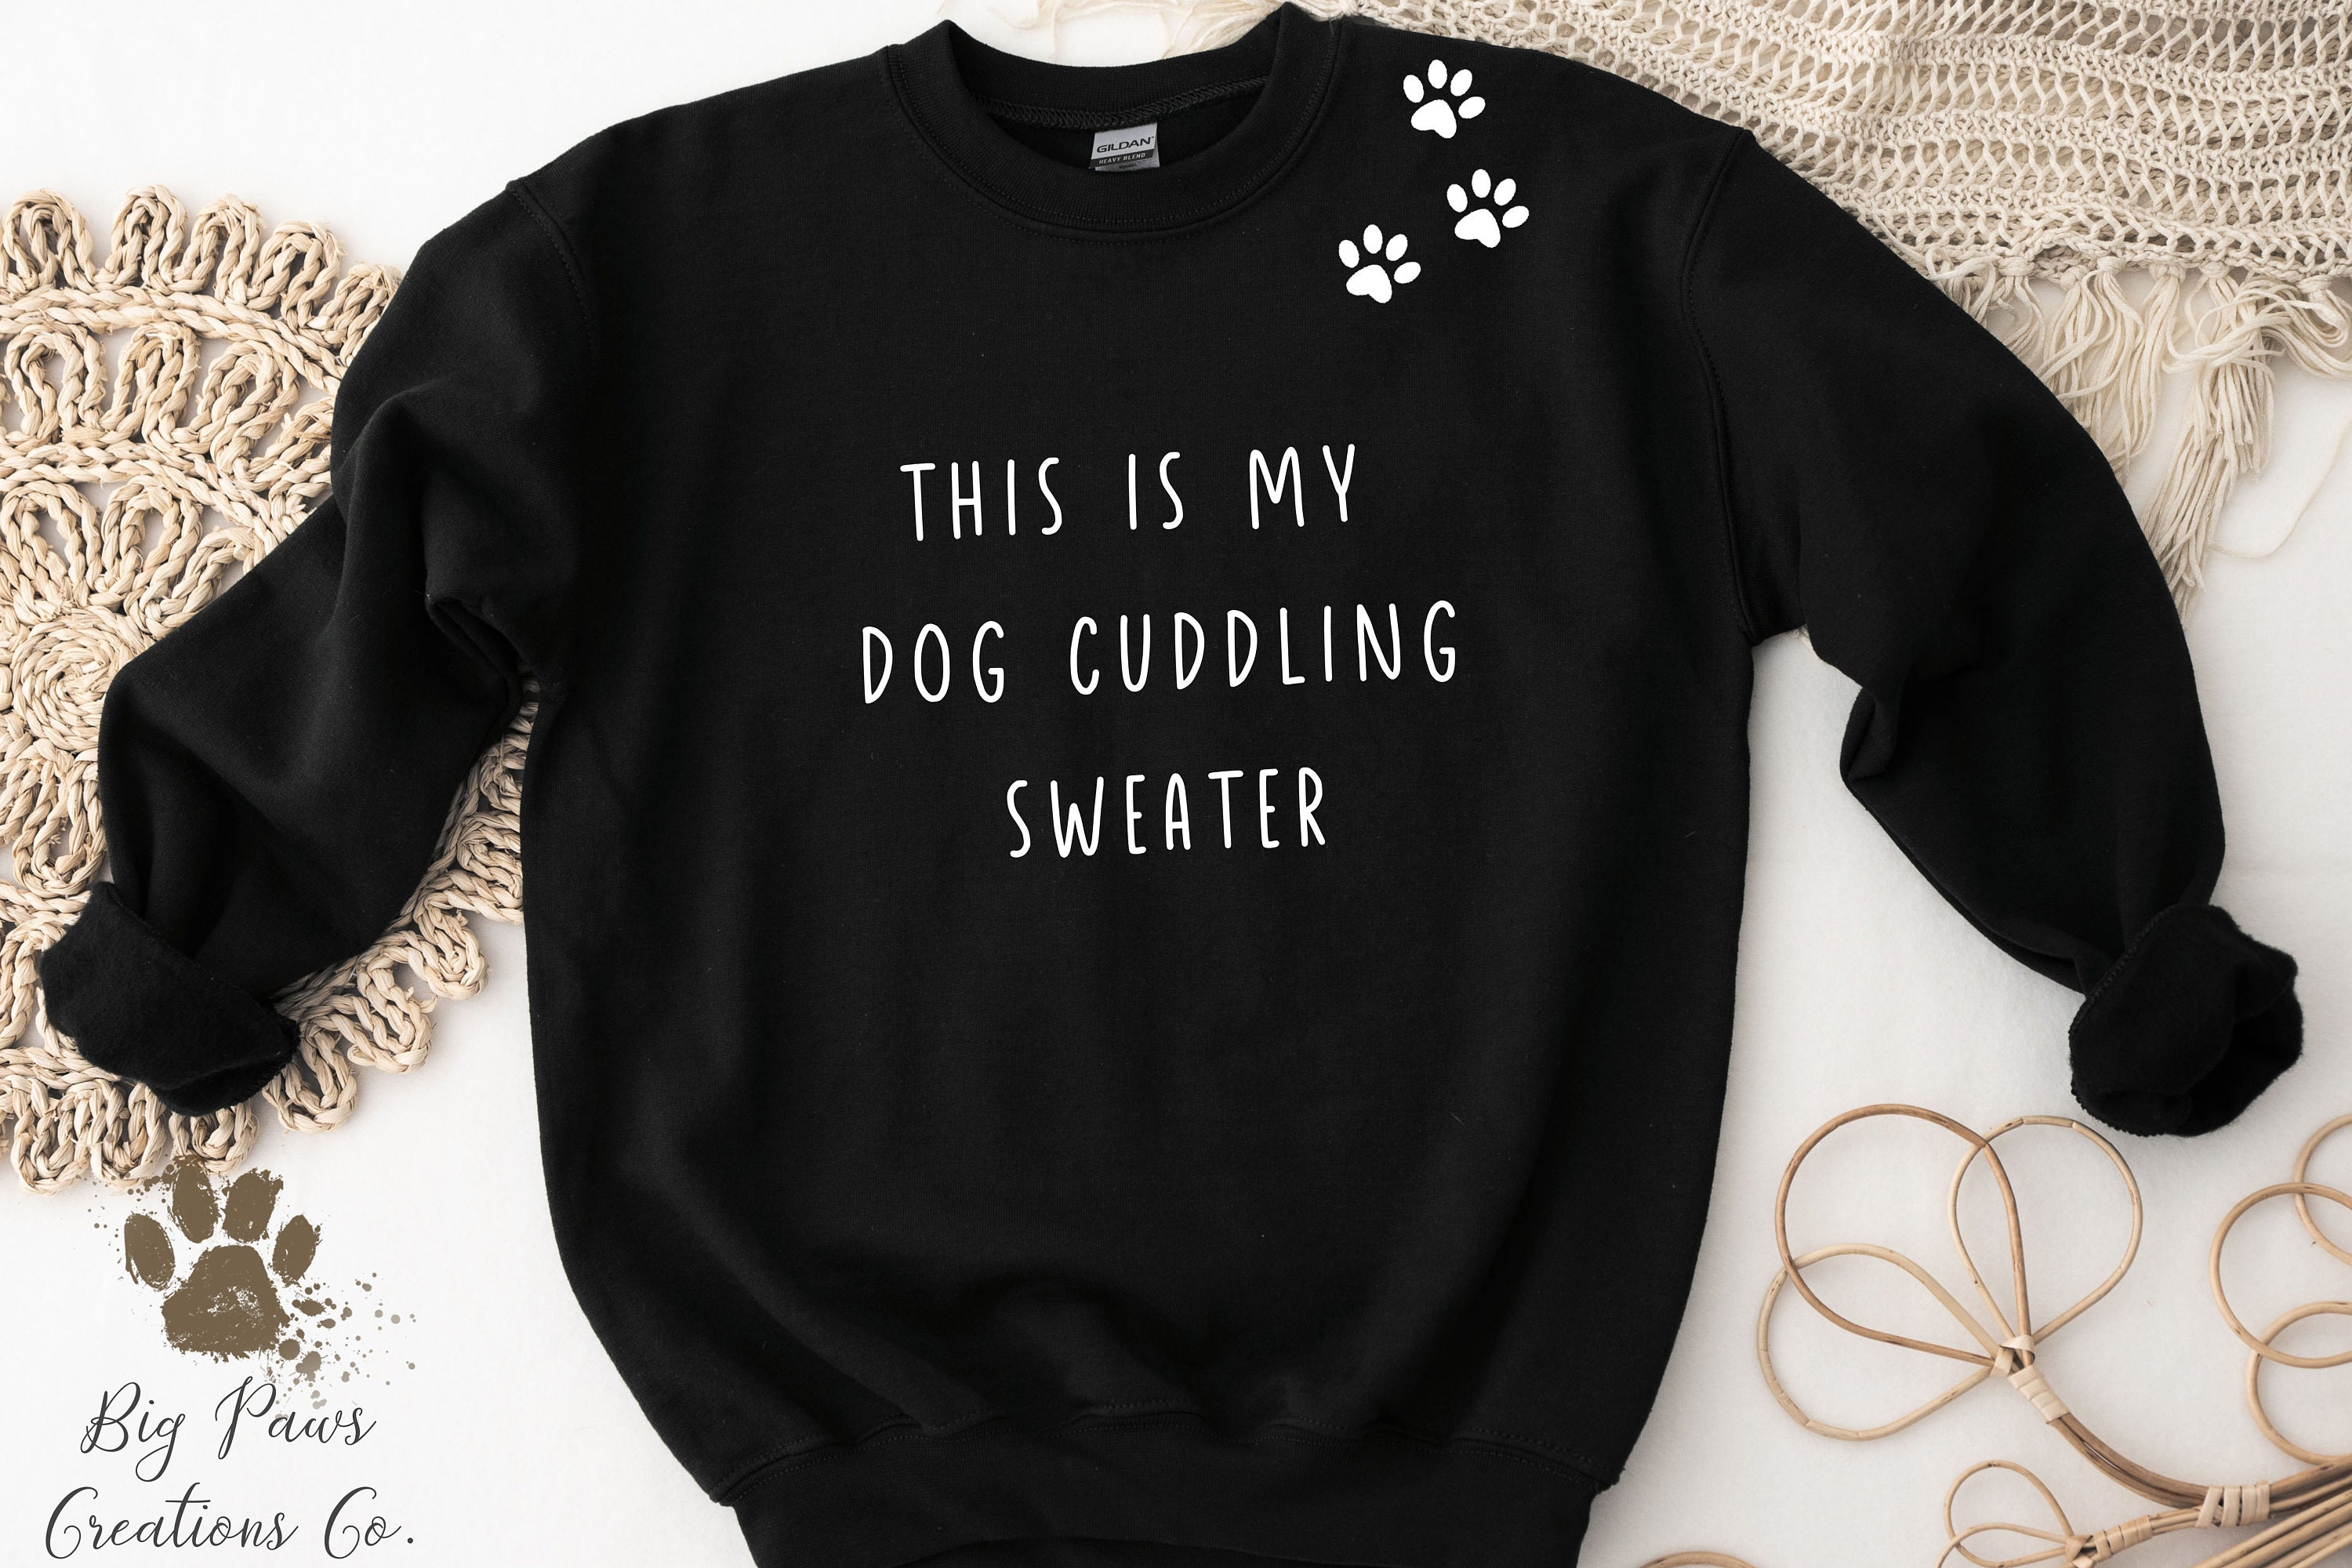 The Hug-A-Dog Cuddler™ - A Light-Weight Fleece Pullover Sweater